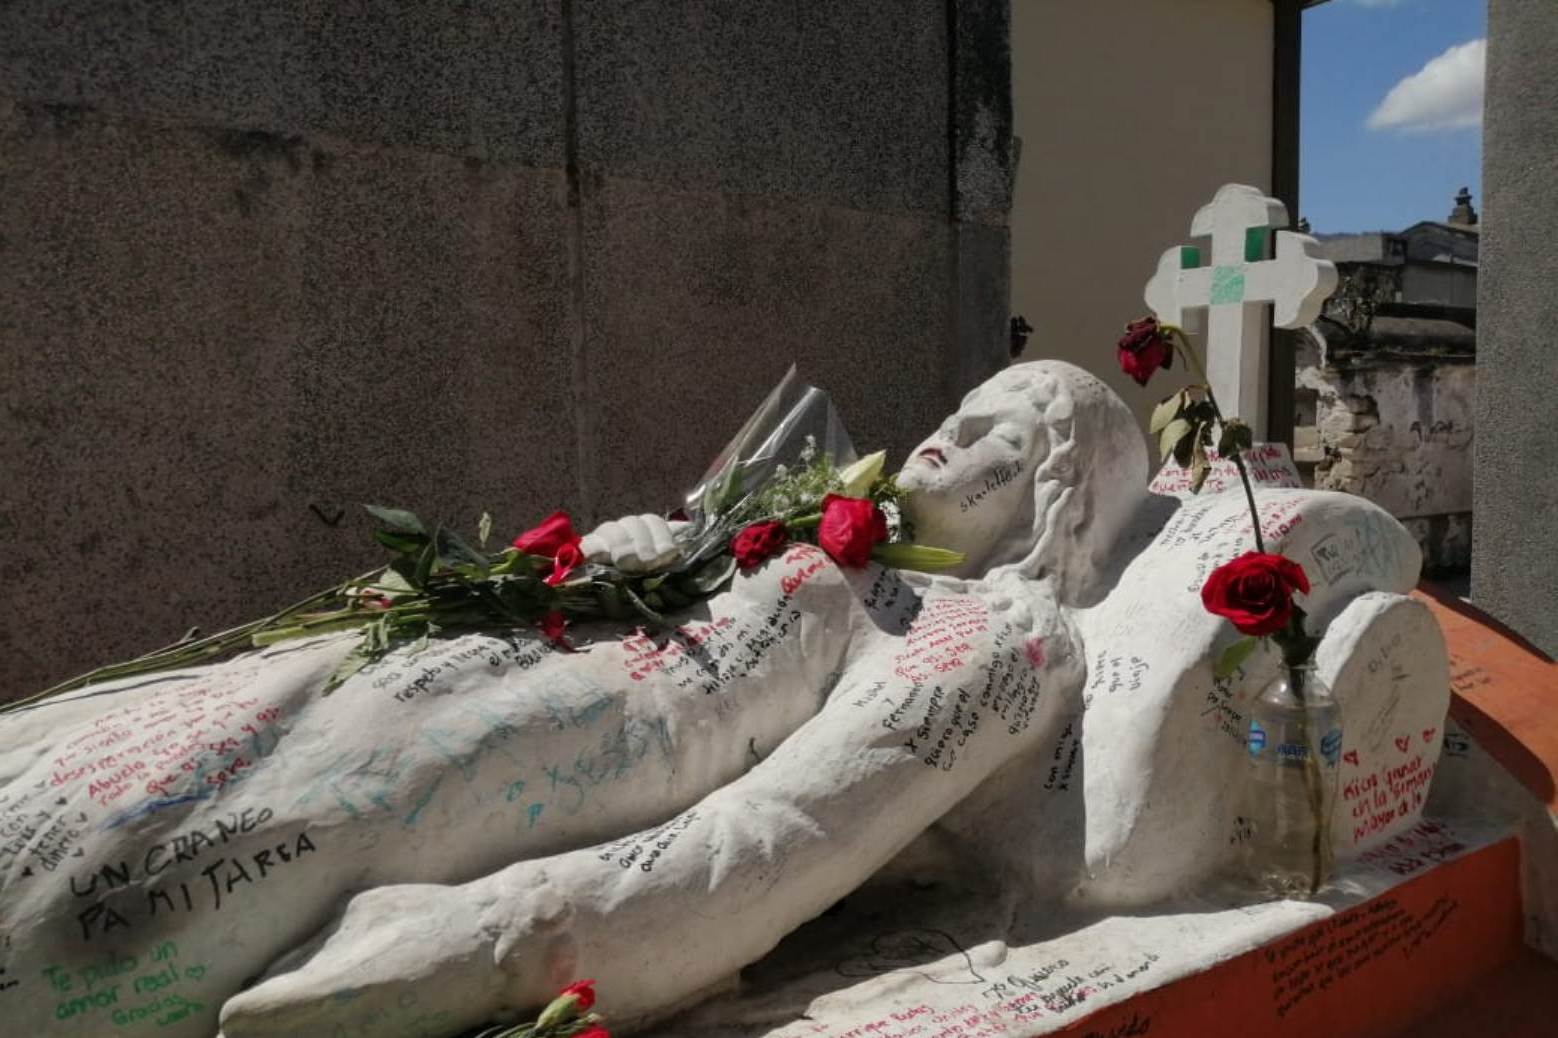 Para el 14 de febrero en Quetzaltenango algunas personas acostumbran a visitar la tumba de Vanushka. (Foto Prensa Libre: María Longo) 